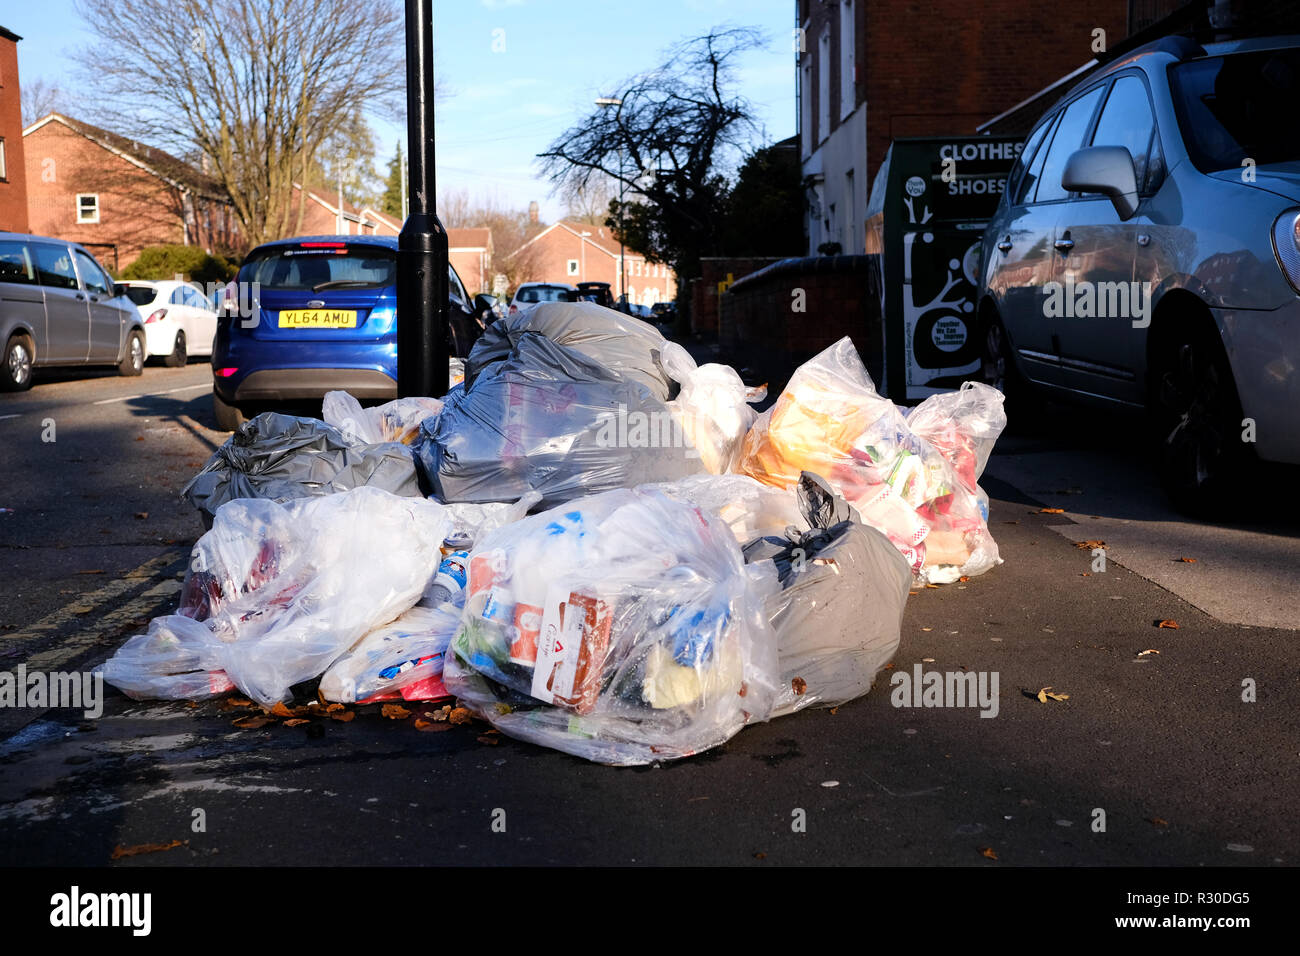 Grandes bolsas de plástico transparente lleno de residuos domésticos son dejados en el pavimento de una calle pendiente de cobro por la autoridad local. Foto de stock